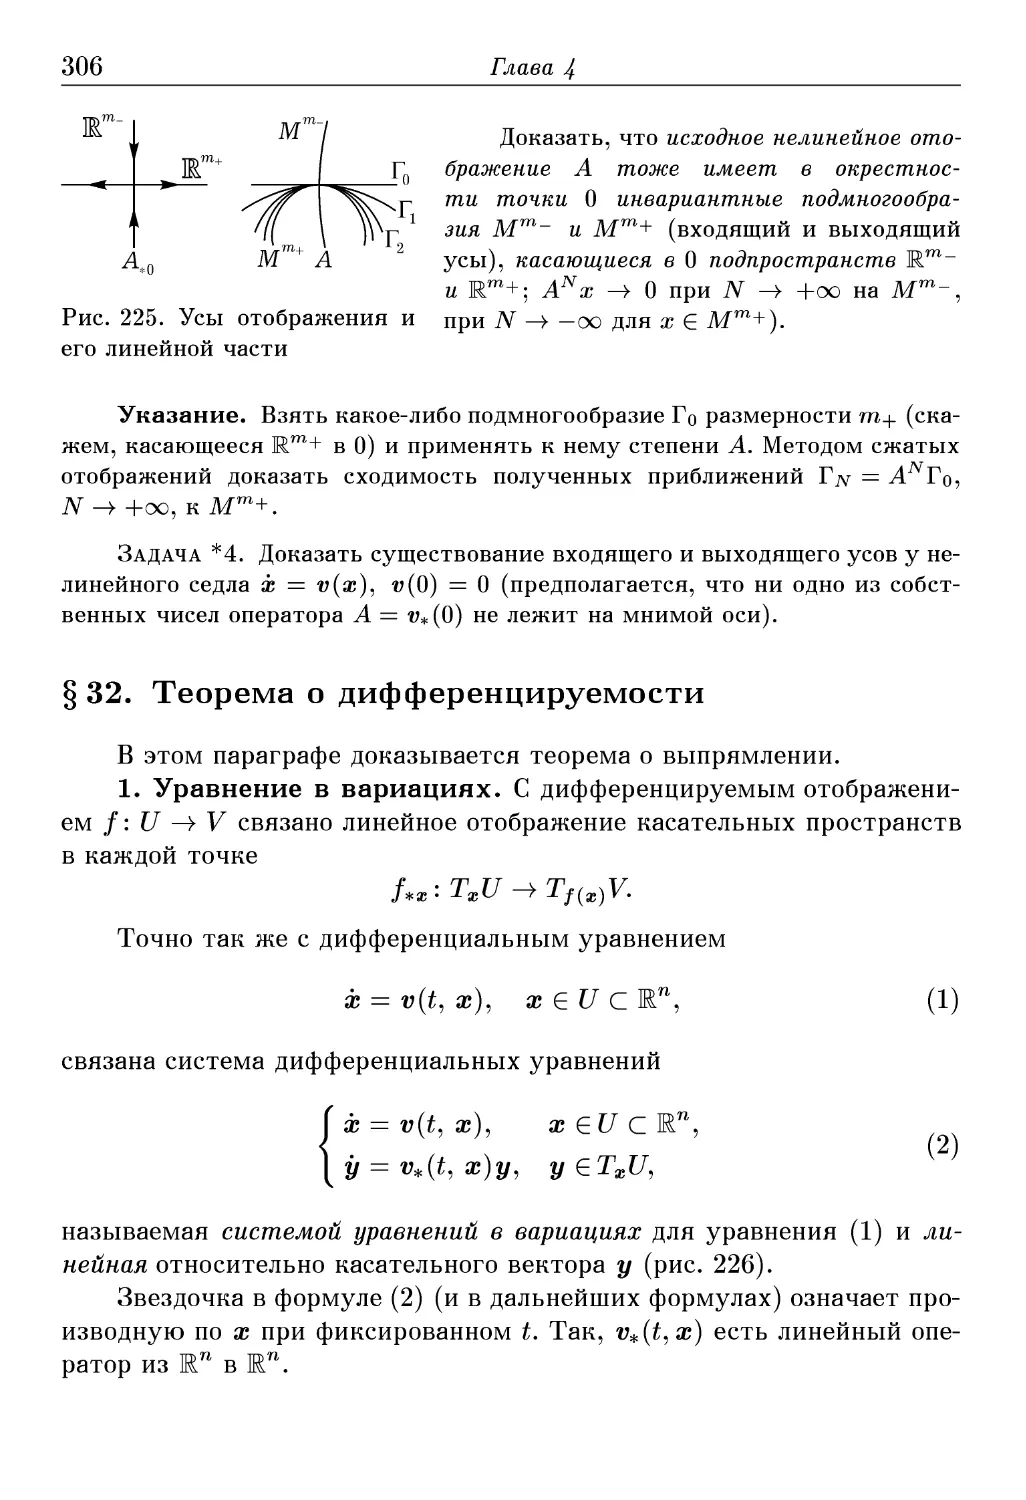 § 32. Теорема о дифференцируемости